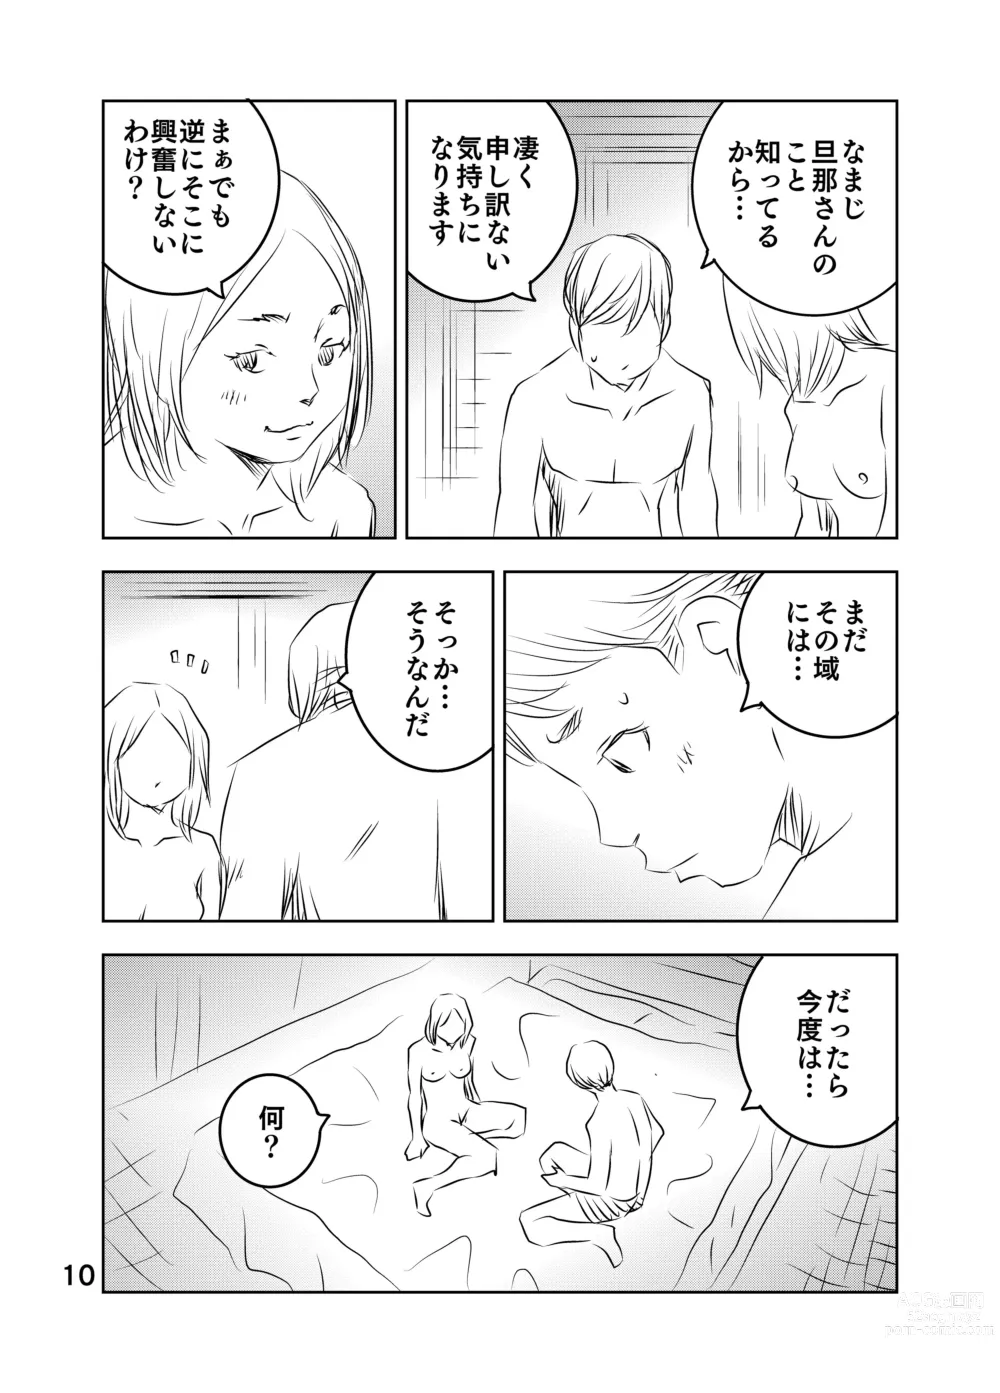 Page 63 of doujinshi Zurui Hito-tachi